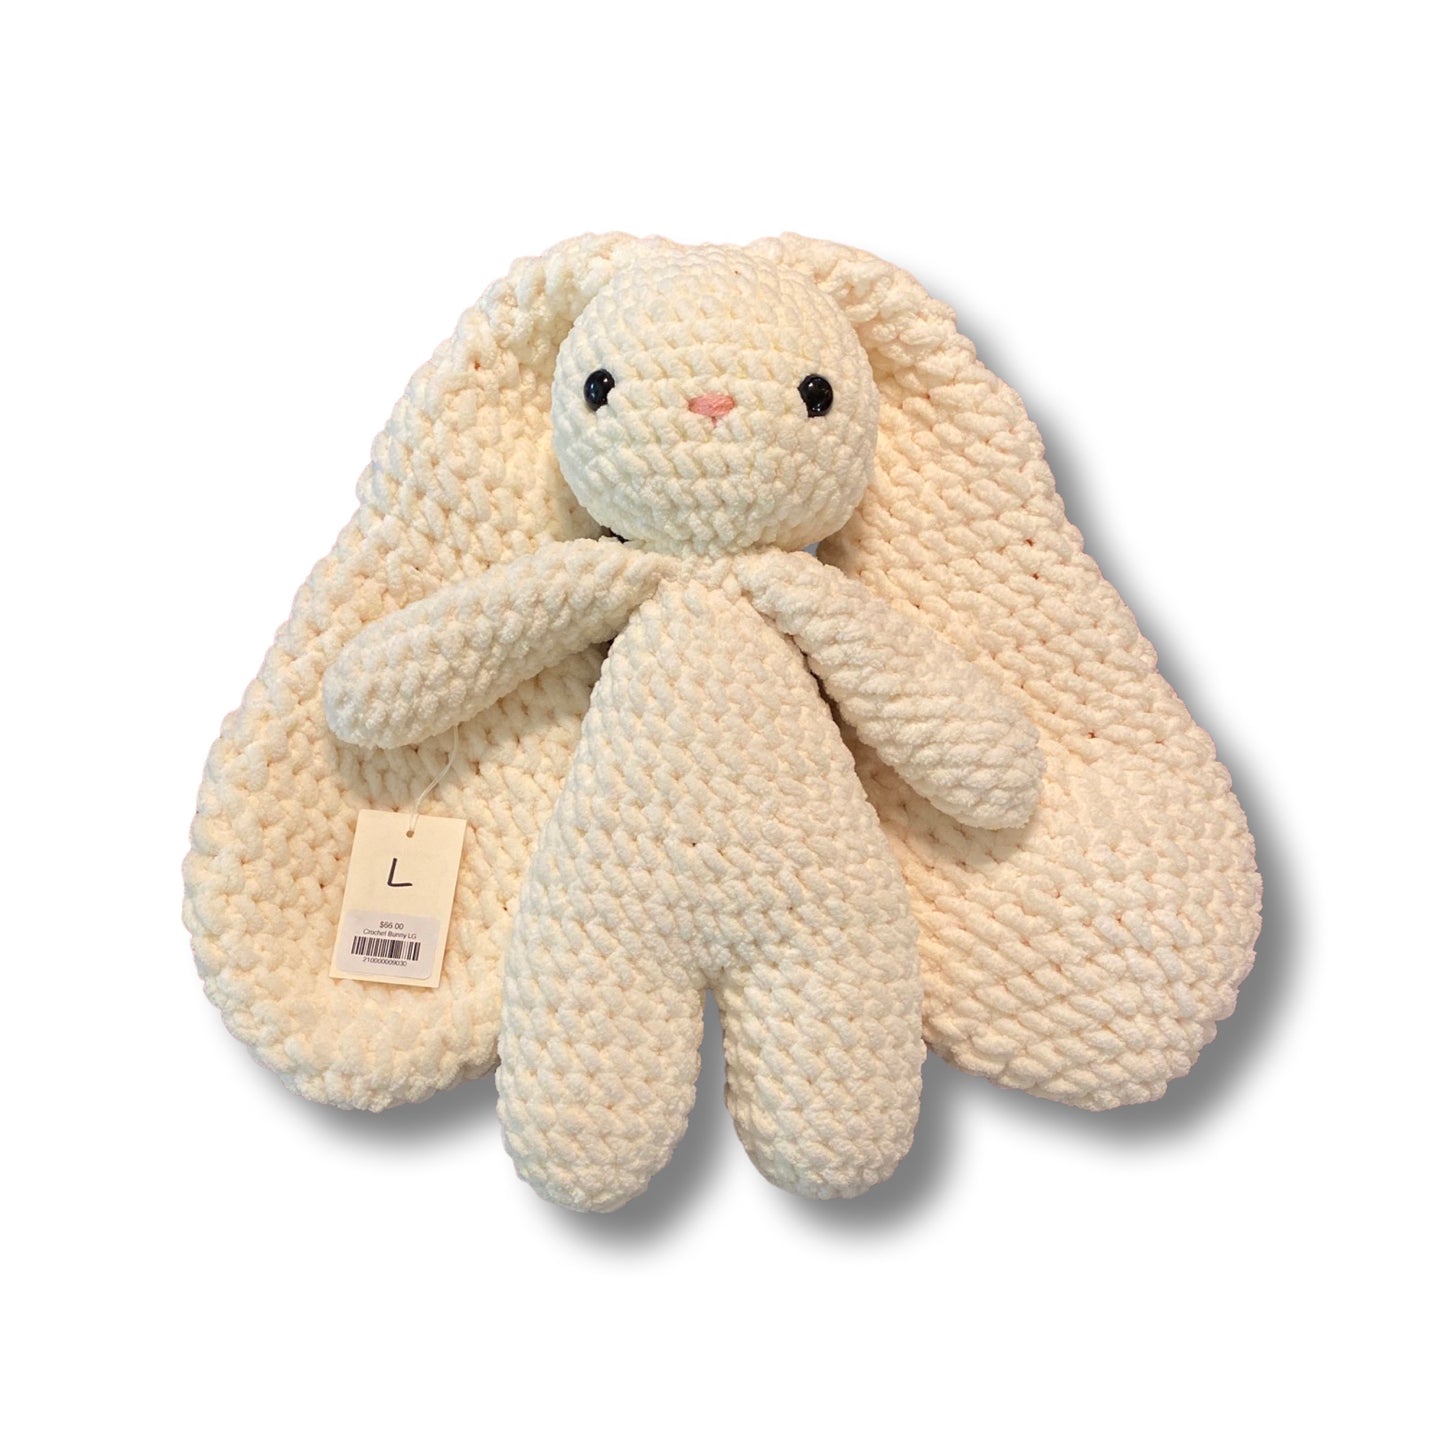 Crochet Bunny LG